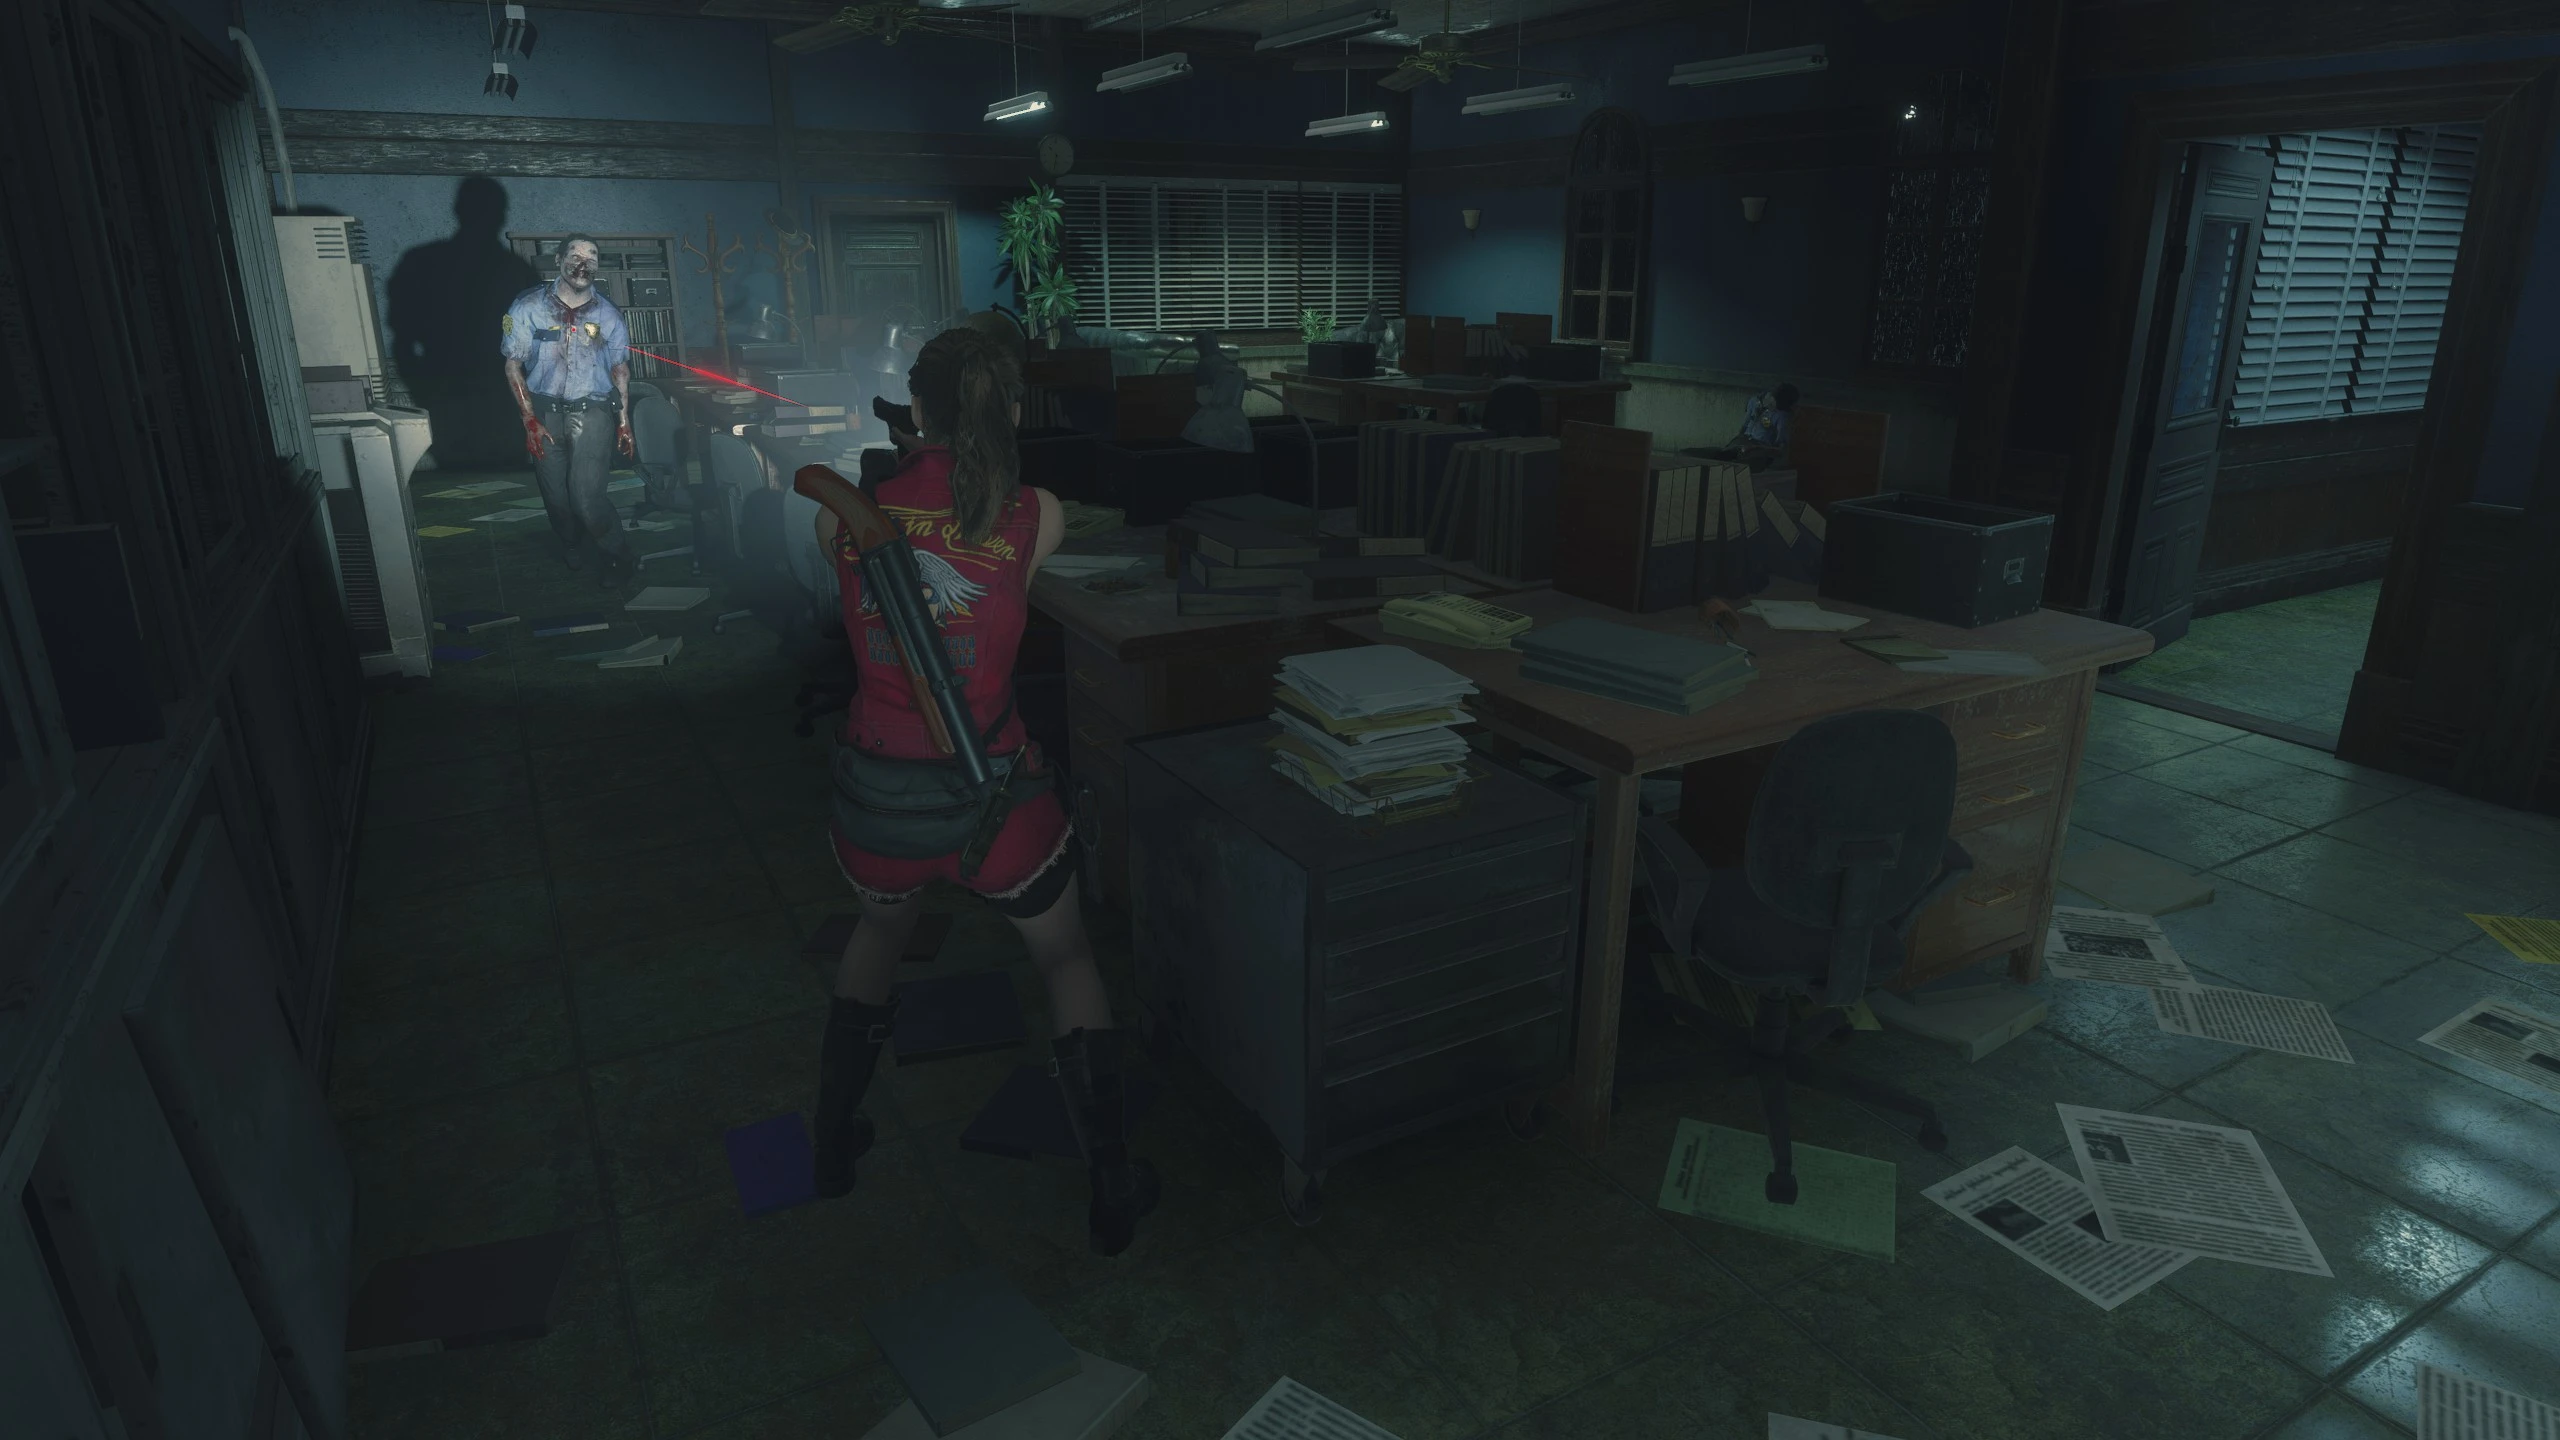 Claire prende la mira a uno zombie in un ufficio affollato nella mod Resident Evil 2 Remake con telecamera fissa